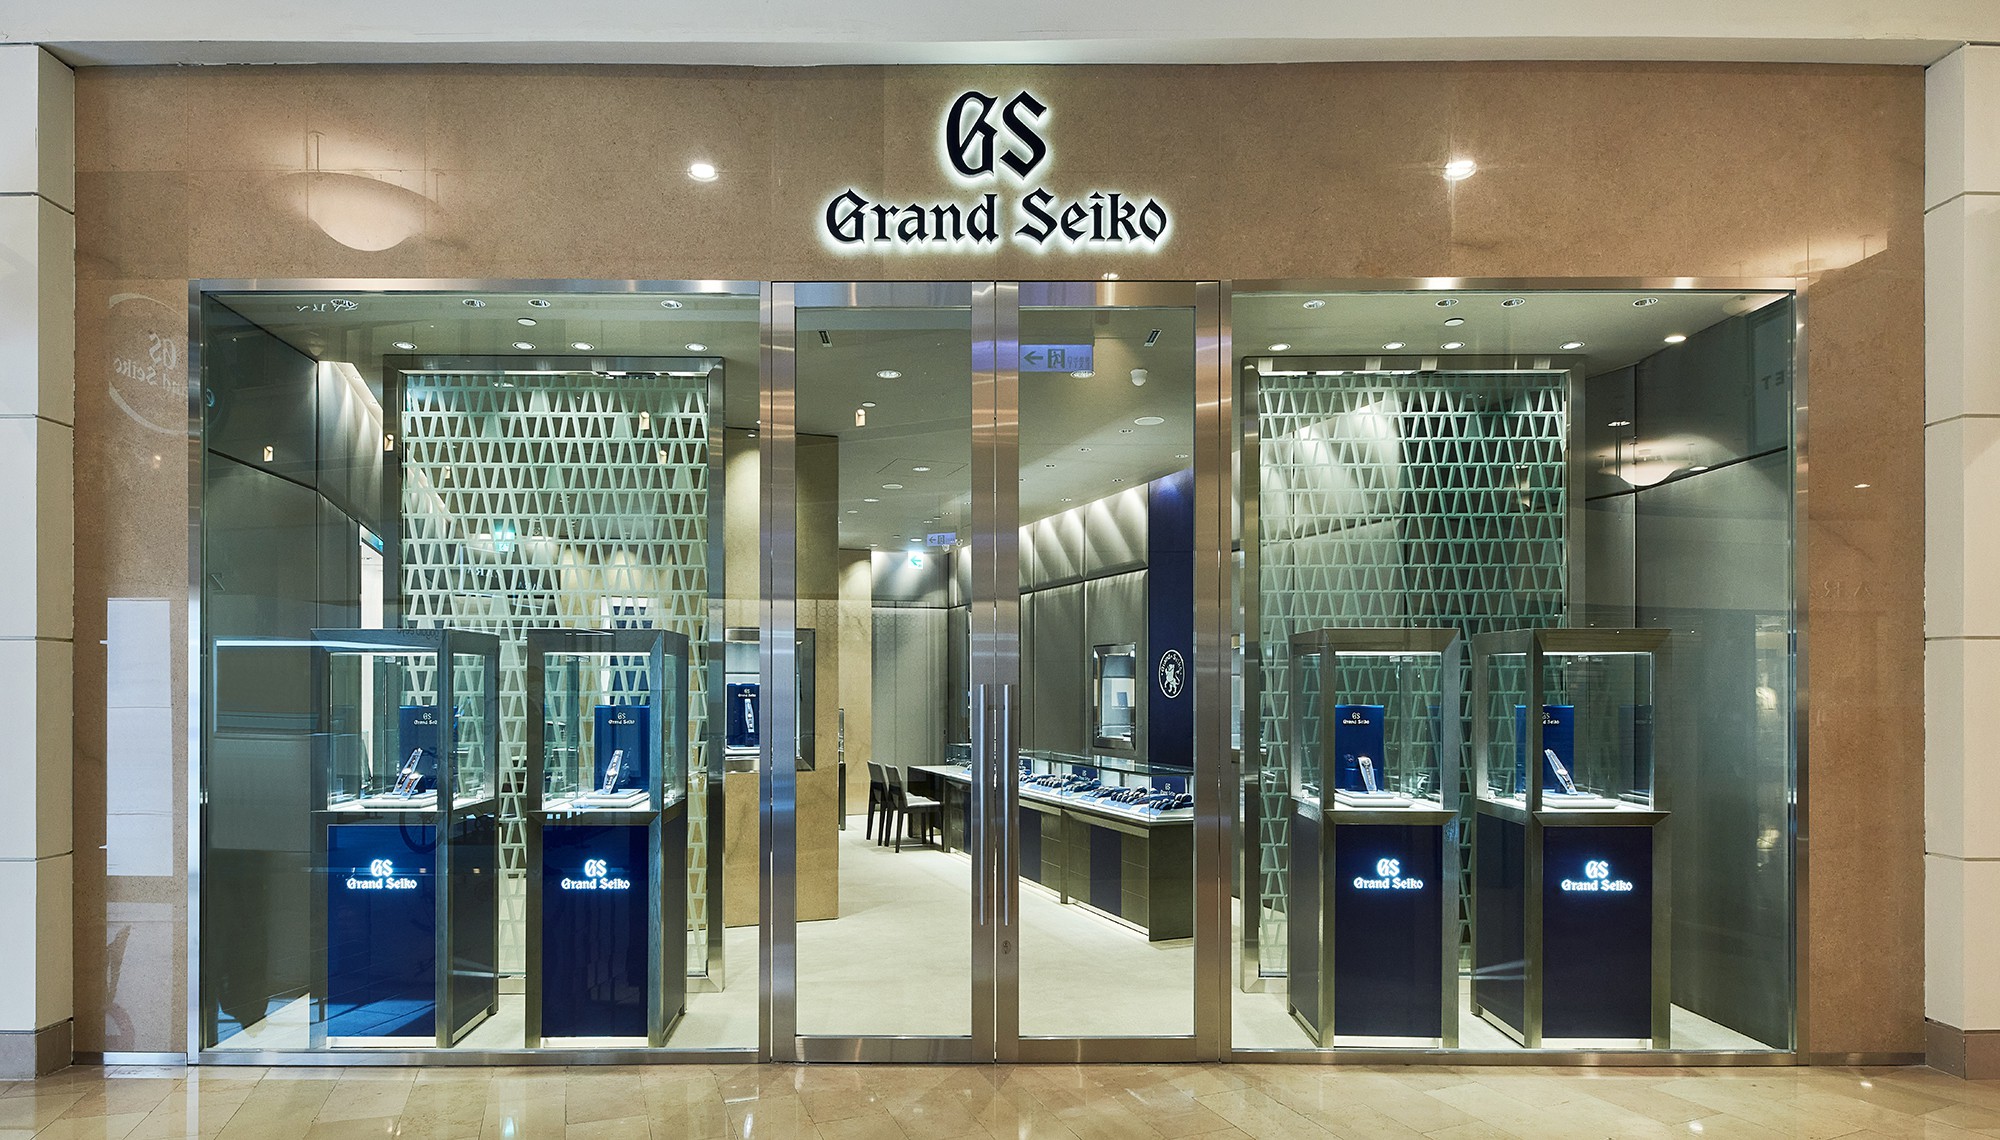 Grand Seiko Boutique in Taipei 101 skyscraper is now open. Grand Seiko